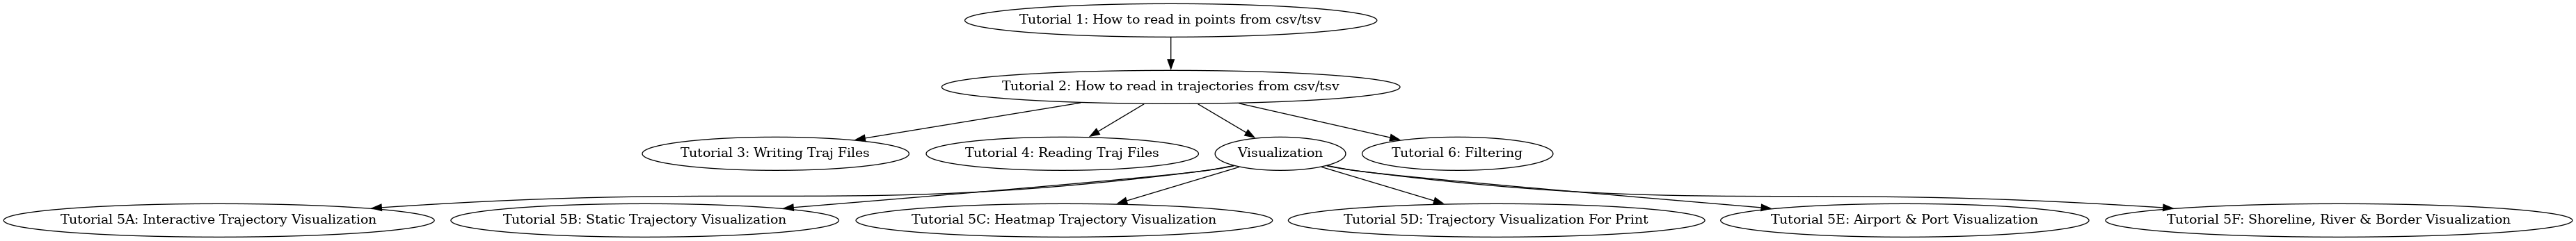 digraph tut_flow {
   tut1 [label="Tutorial 1: How to read in points from csv/tsv"];
   tut2 [label="Tutorial 2: How to read in trajectories from csv/tsv"];
   tut3 [label="Tutorial 3: Writing Traj Files"];
   tut4 [label="Tutorial 4: Reading Traj Files"];
   viz [label="Visualization"]
   tut5A [label="Tutorial 5A: Interactive Trajectory Visualization"];
   tut5B [label="Tutorial 5B: Static Trajectory Visualization"];
   tut5C [label="Tutorial 5C: Heatmap Trajectory Visualization"];
   tut5D [label="Tutorial 5D: Trajectory Visualization For Print"];
   tut5E [label="Tutorial 5E: Airport & Port Visualization"];
   tut5F [label="Tutorial 5F: Shoreline, River & Border Visualization"];
   tut6 [label="Tutorial 6: Filtering"];

   tut1 -> tut2;
   tut2 -> tut3;
   tut2 -> tut4;
   tut2 -> viz;
   viz -> tut5A;
   viz -> tut5B;
   viz -> tut5C;
   viz -> tut5D;
   viz -> tut5E;
   viz -> tut5F;
   tut2 -> tut6;
}